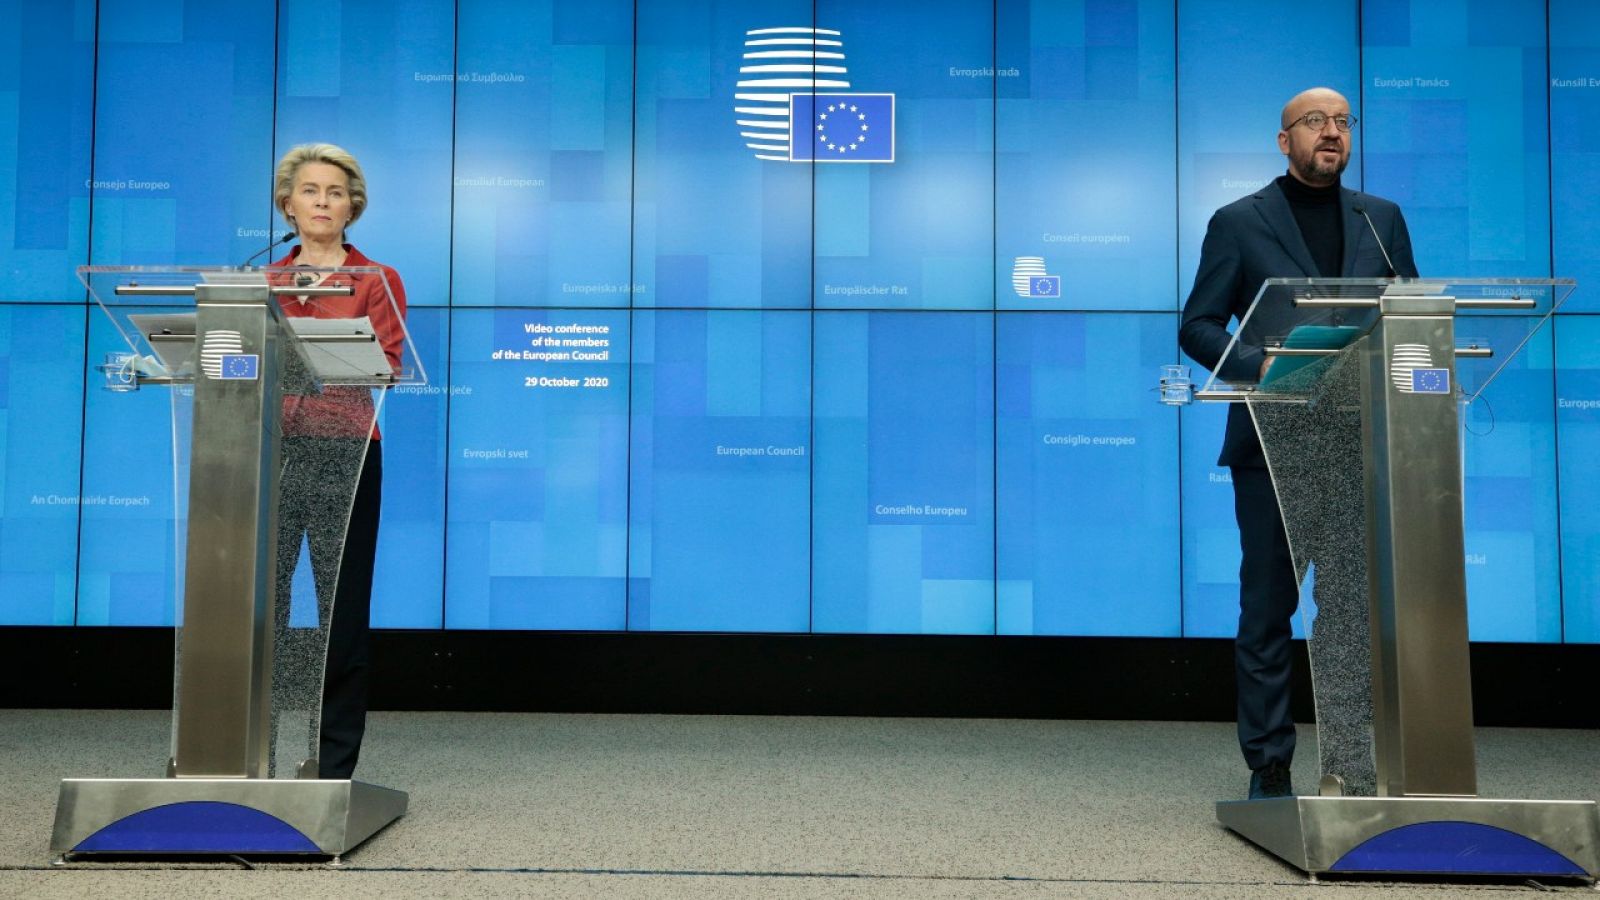 La presidenta de la Comisión Europea, Ursula von der Leyen (i), y el presidente del Consejo Europeo, Charles Michel, durante la rueda de prensa posterior a la cumbre extraordinaria de la UE sobre la COVID-19 el 29 de octubre de 2020 .